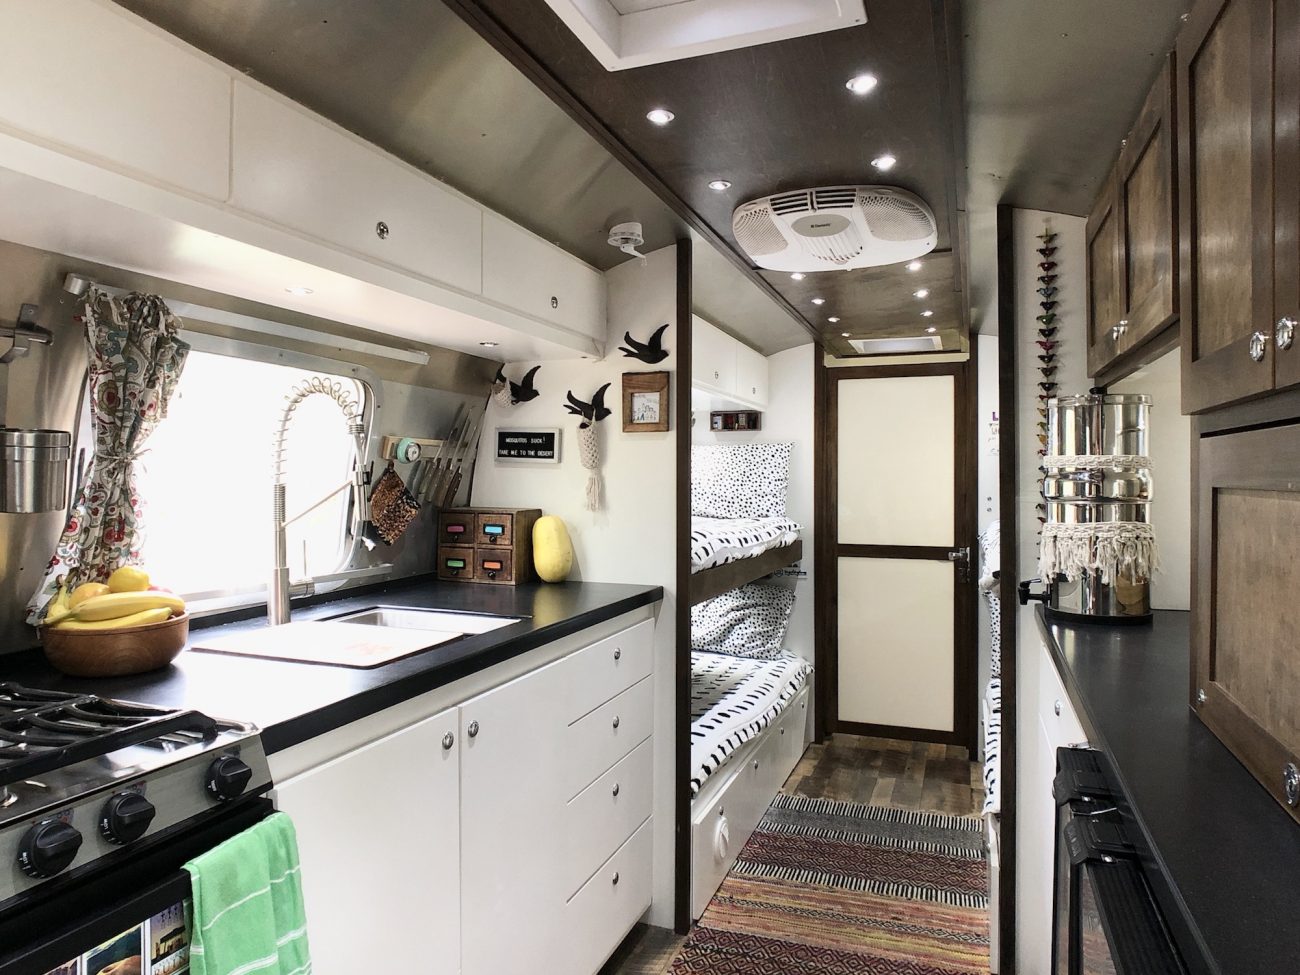 Airstream Kitchen